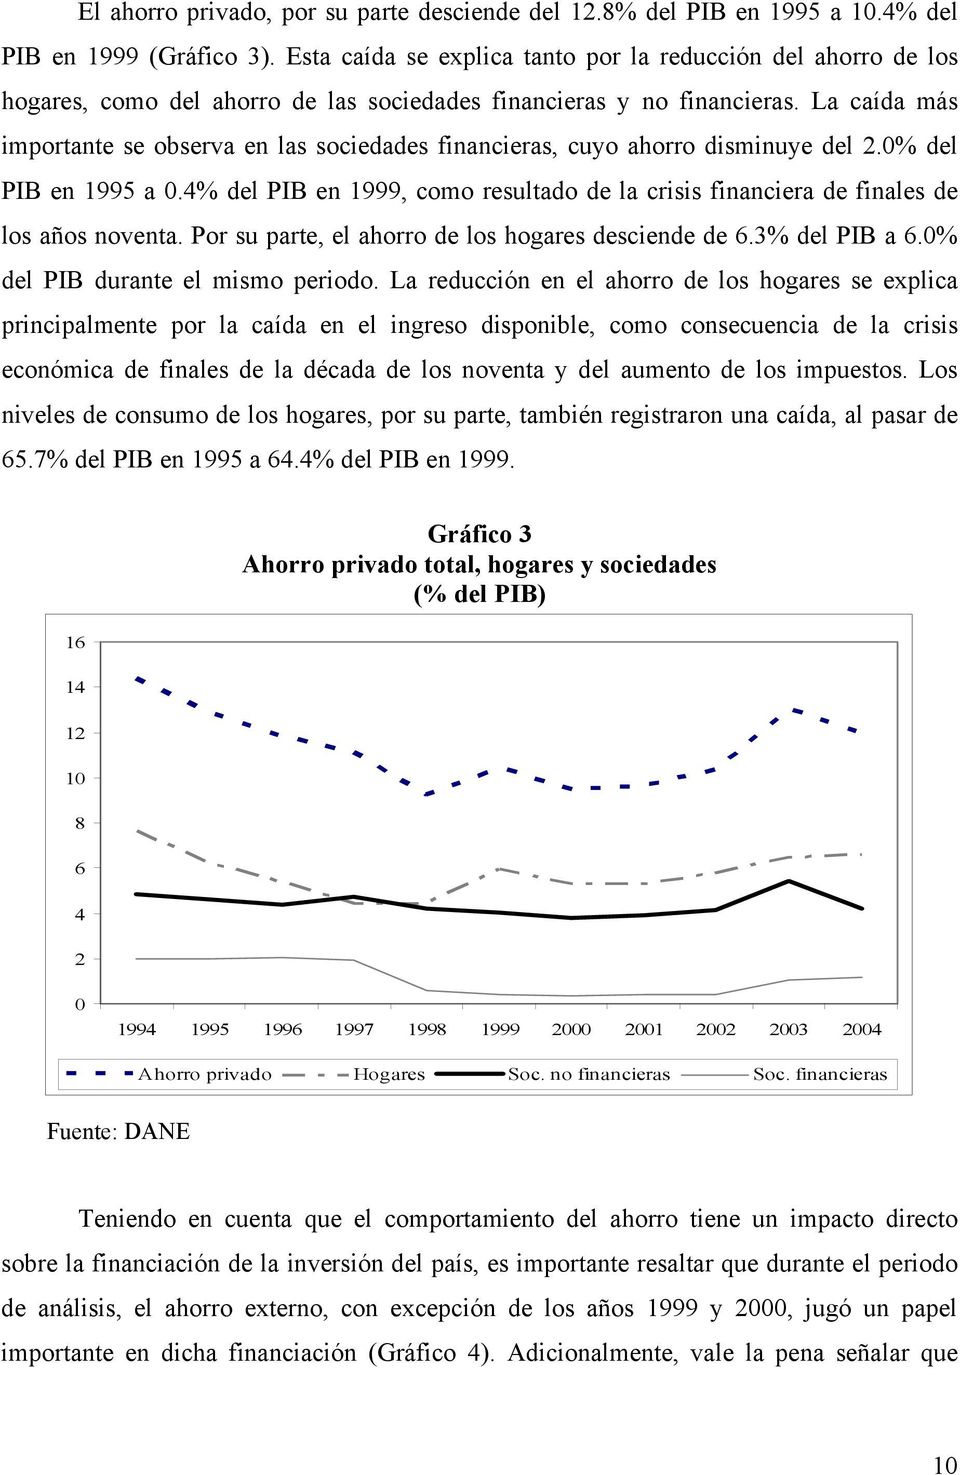 La caída más importante se observa en las sociedades financieras, cuyo ahorro disminuye del 2.0% del PIB en 1995 a 0.